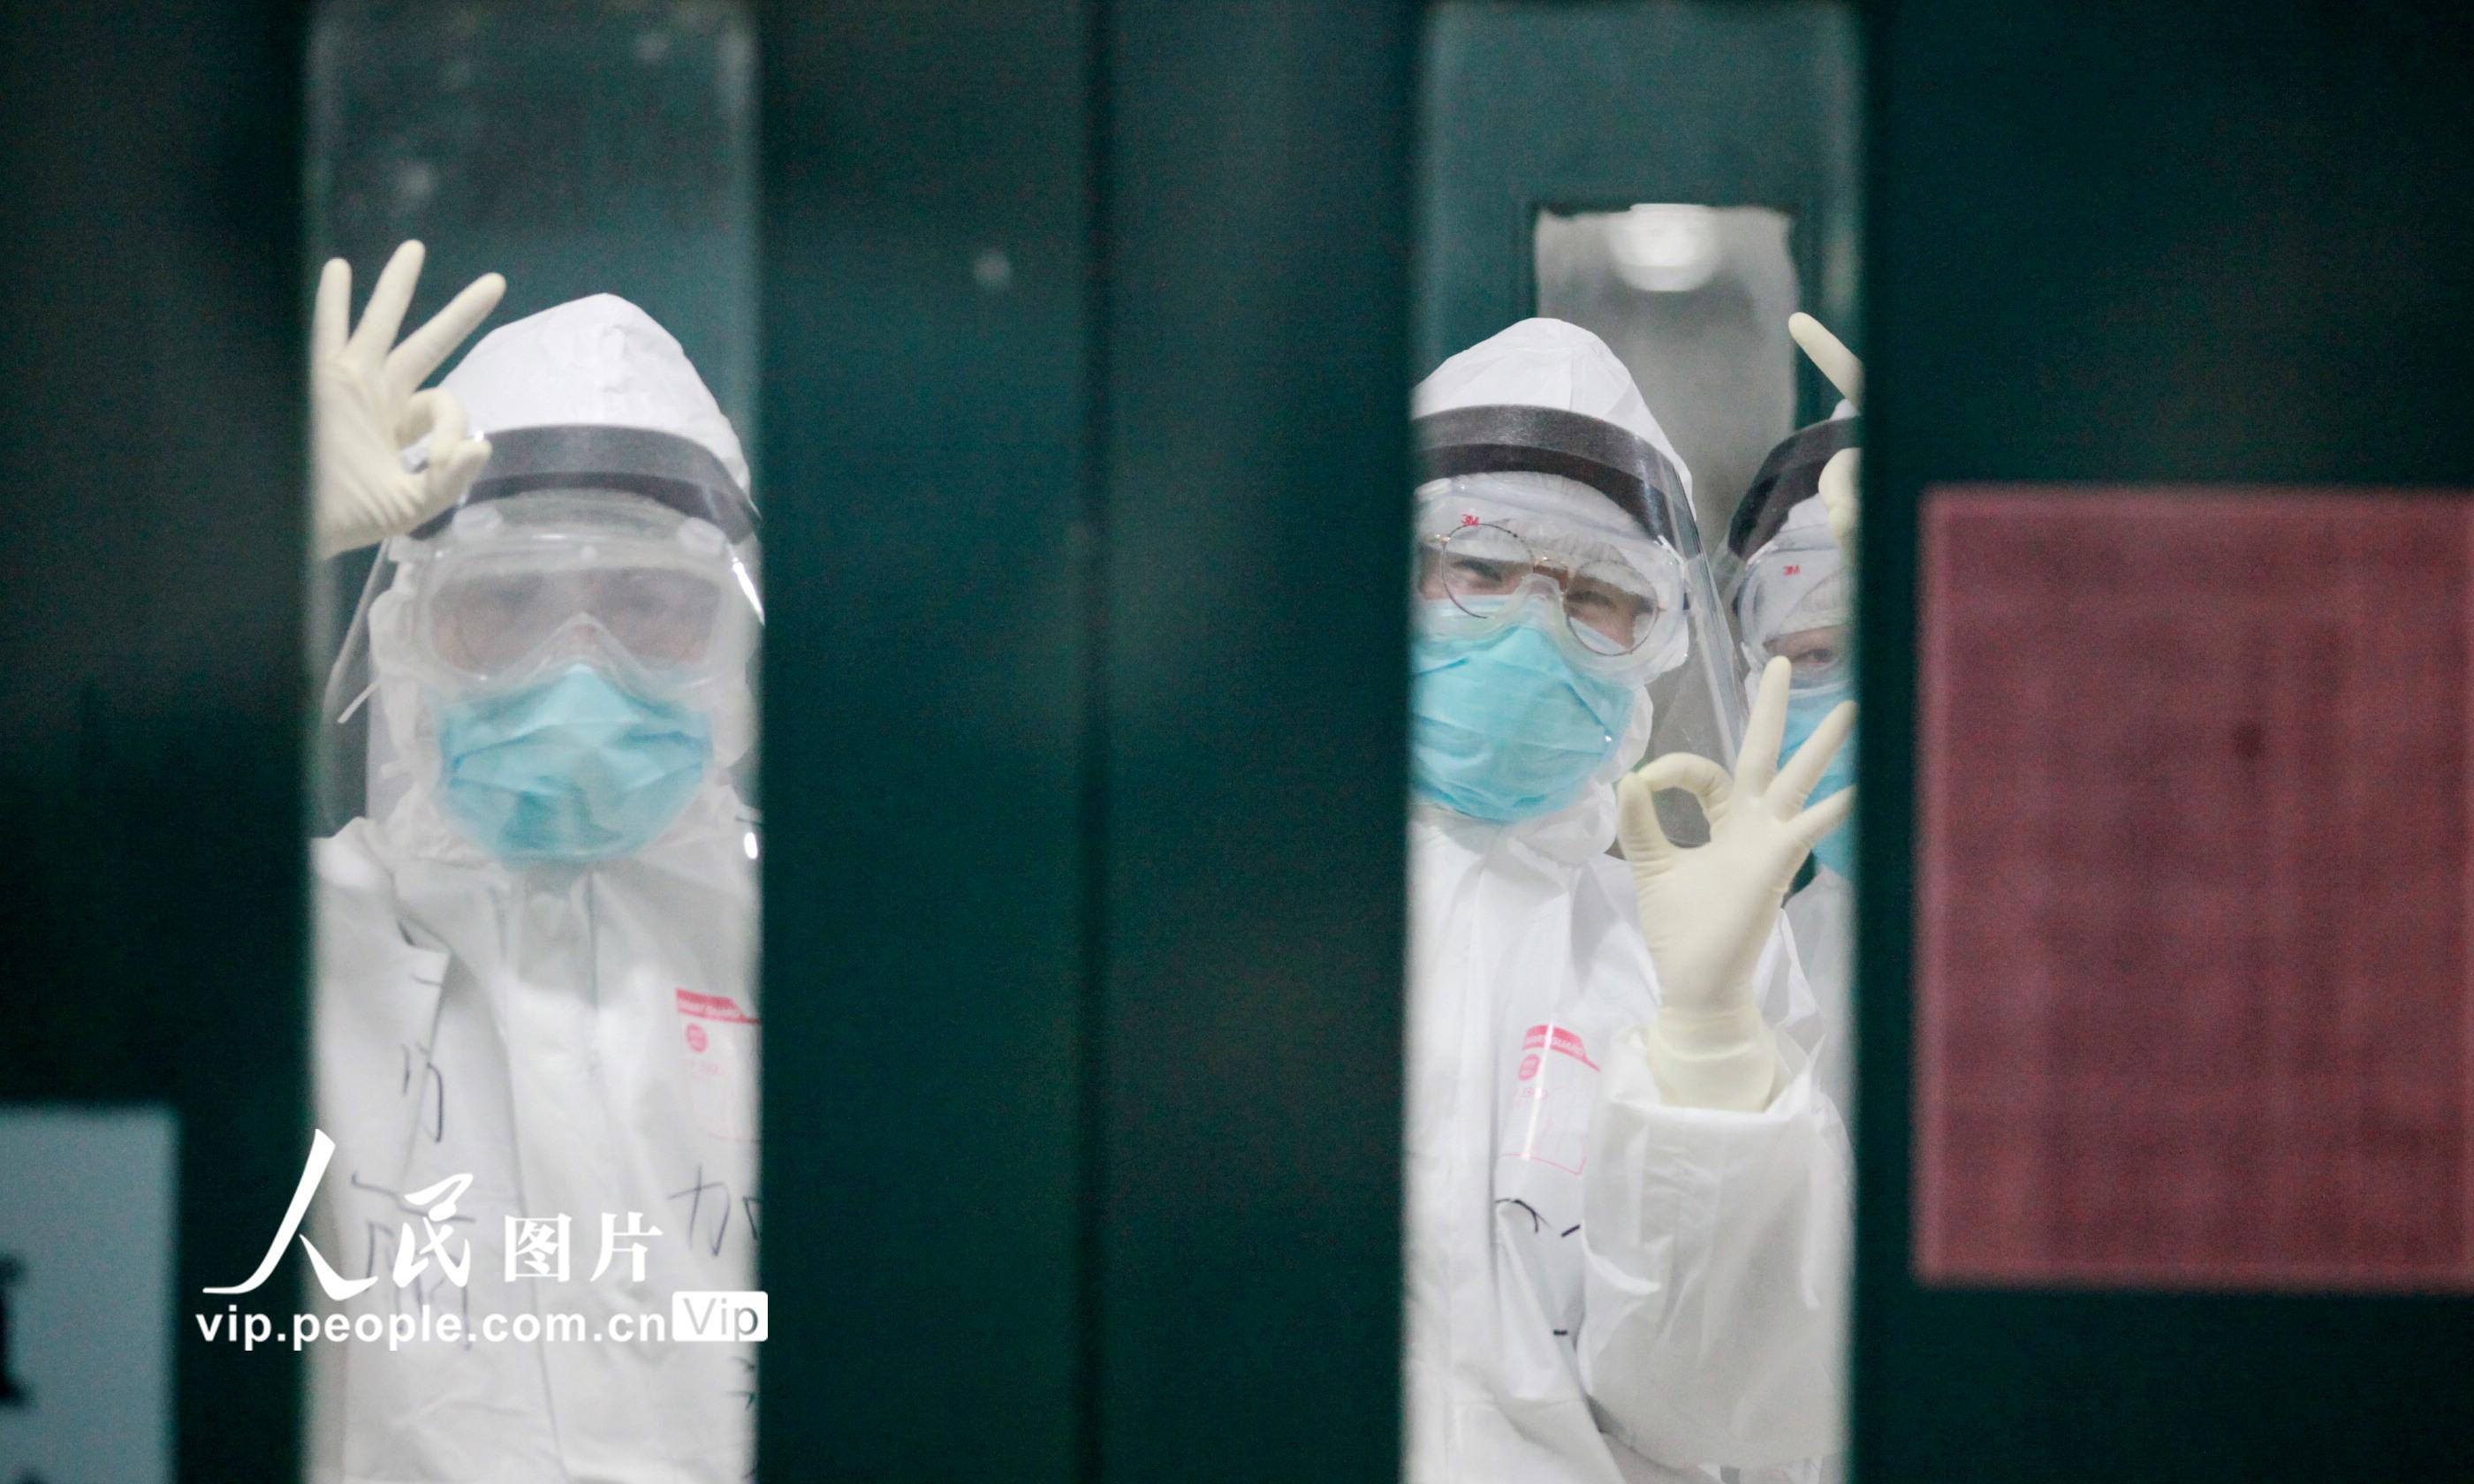 江苏扬州:战疫一线的医护人员